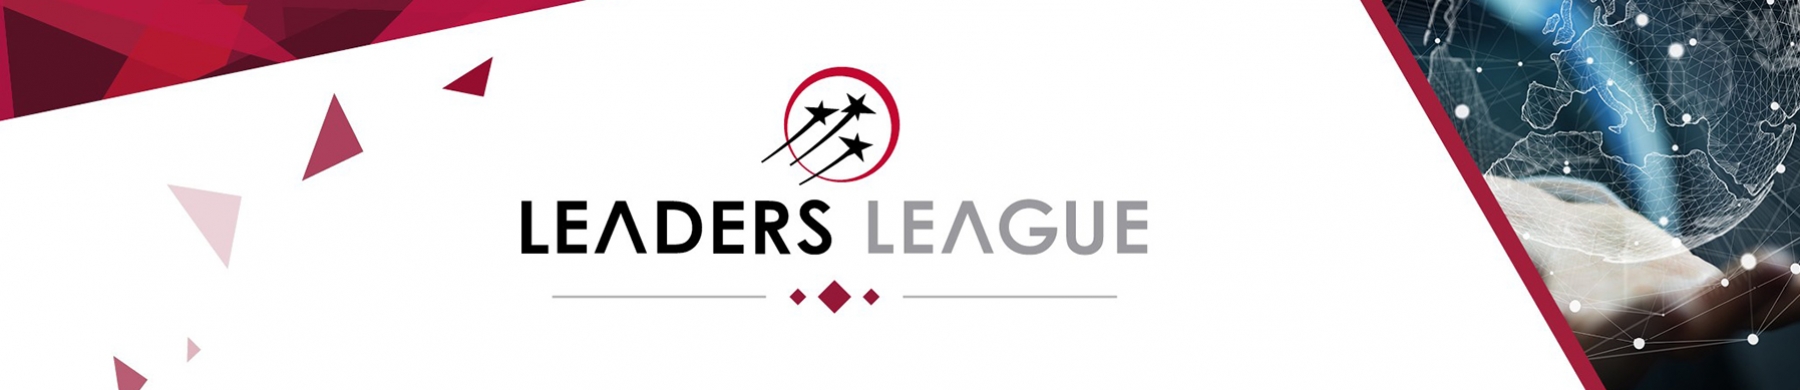 Bannière Leaders League